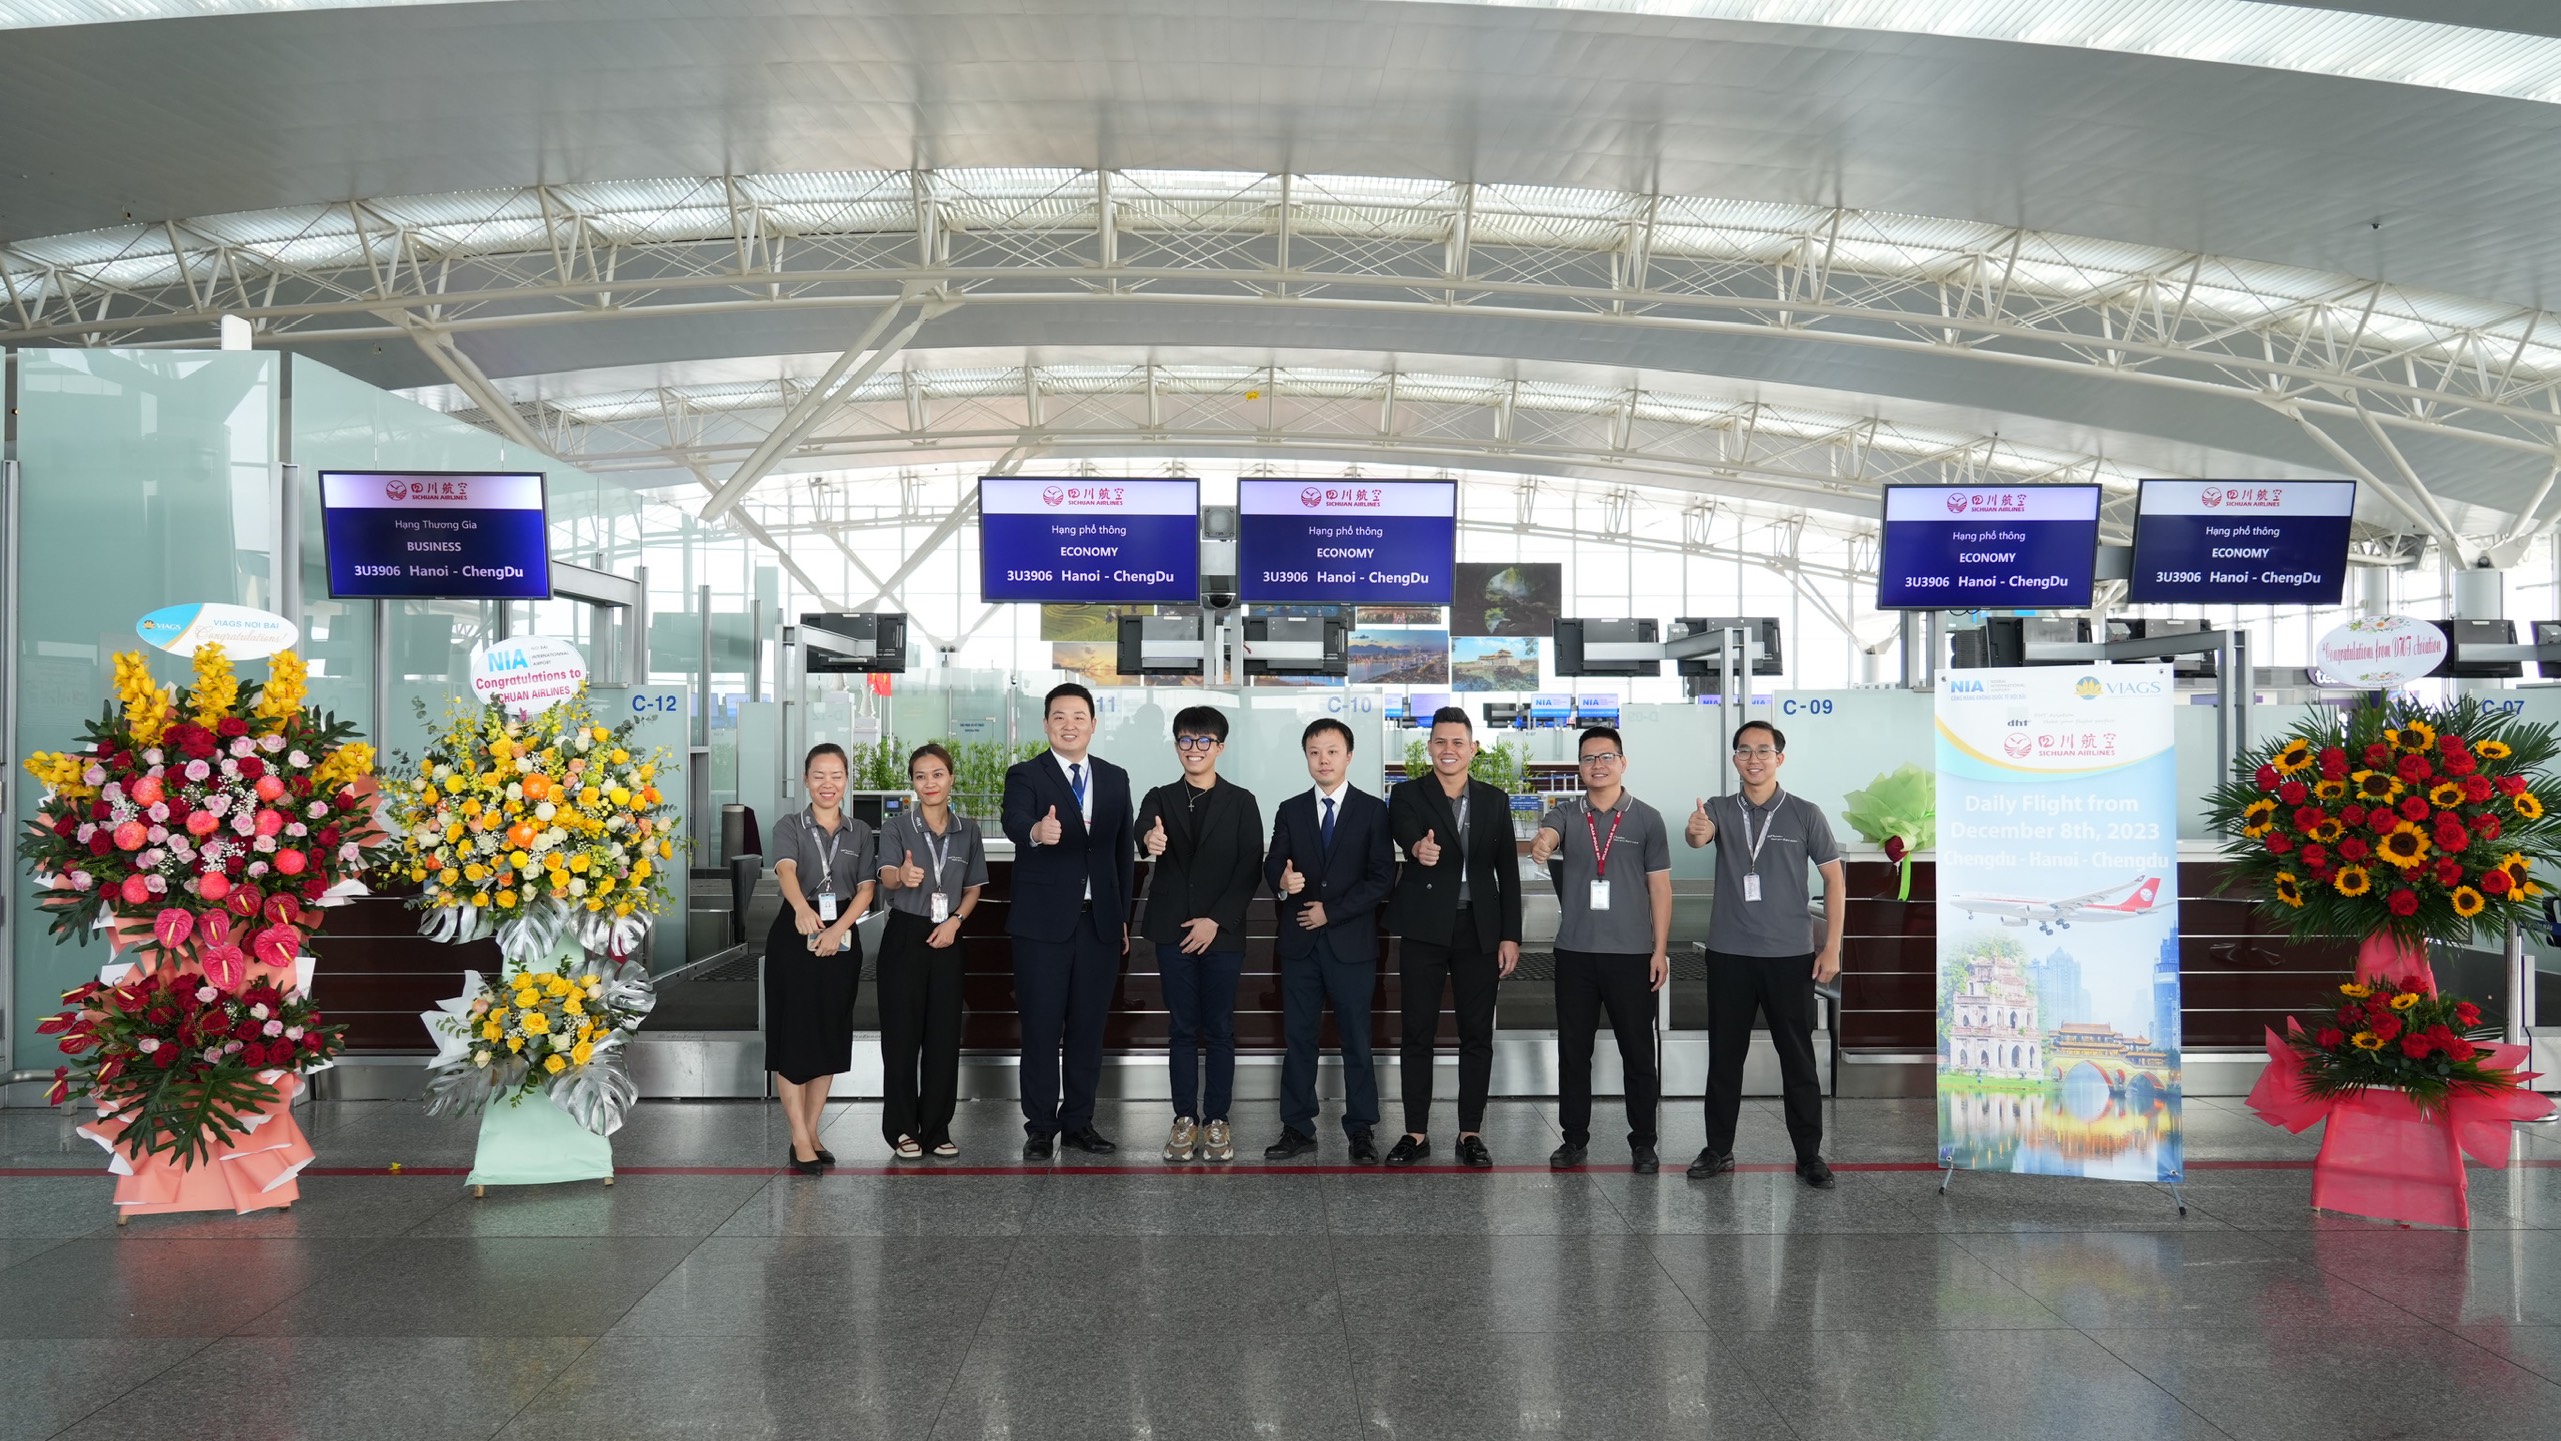 Hãng hàng không Sichuan Airlines bắt đầu khai thác chuyến bay từ Thành Đô (Tứ Xuyên) đến Việt Nam qua sân bay Nội Bài (Hà Nội).